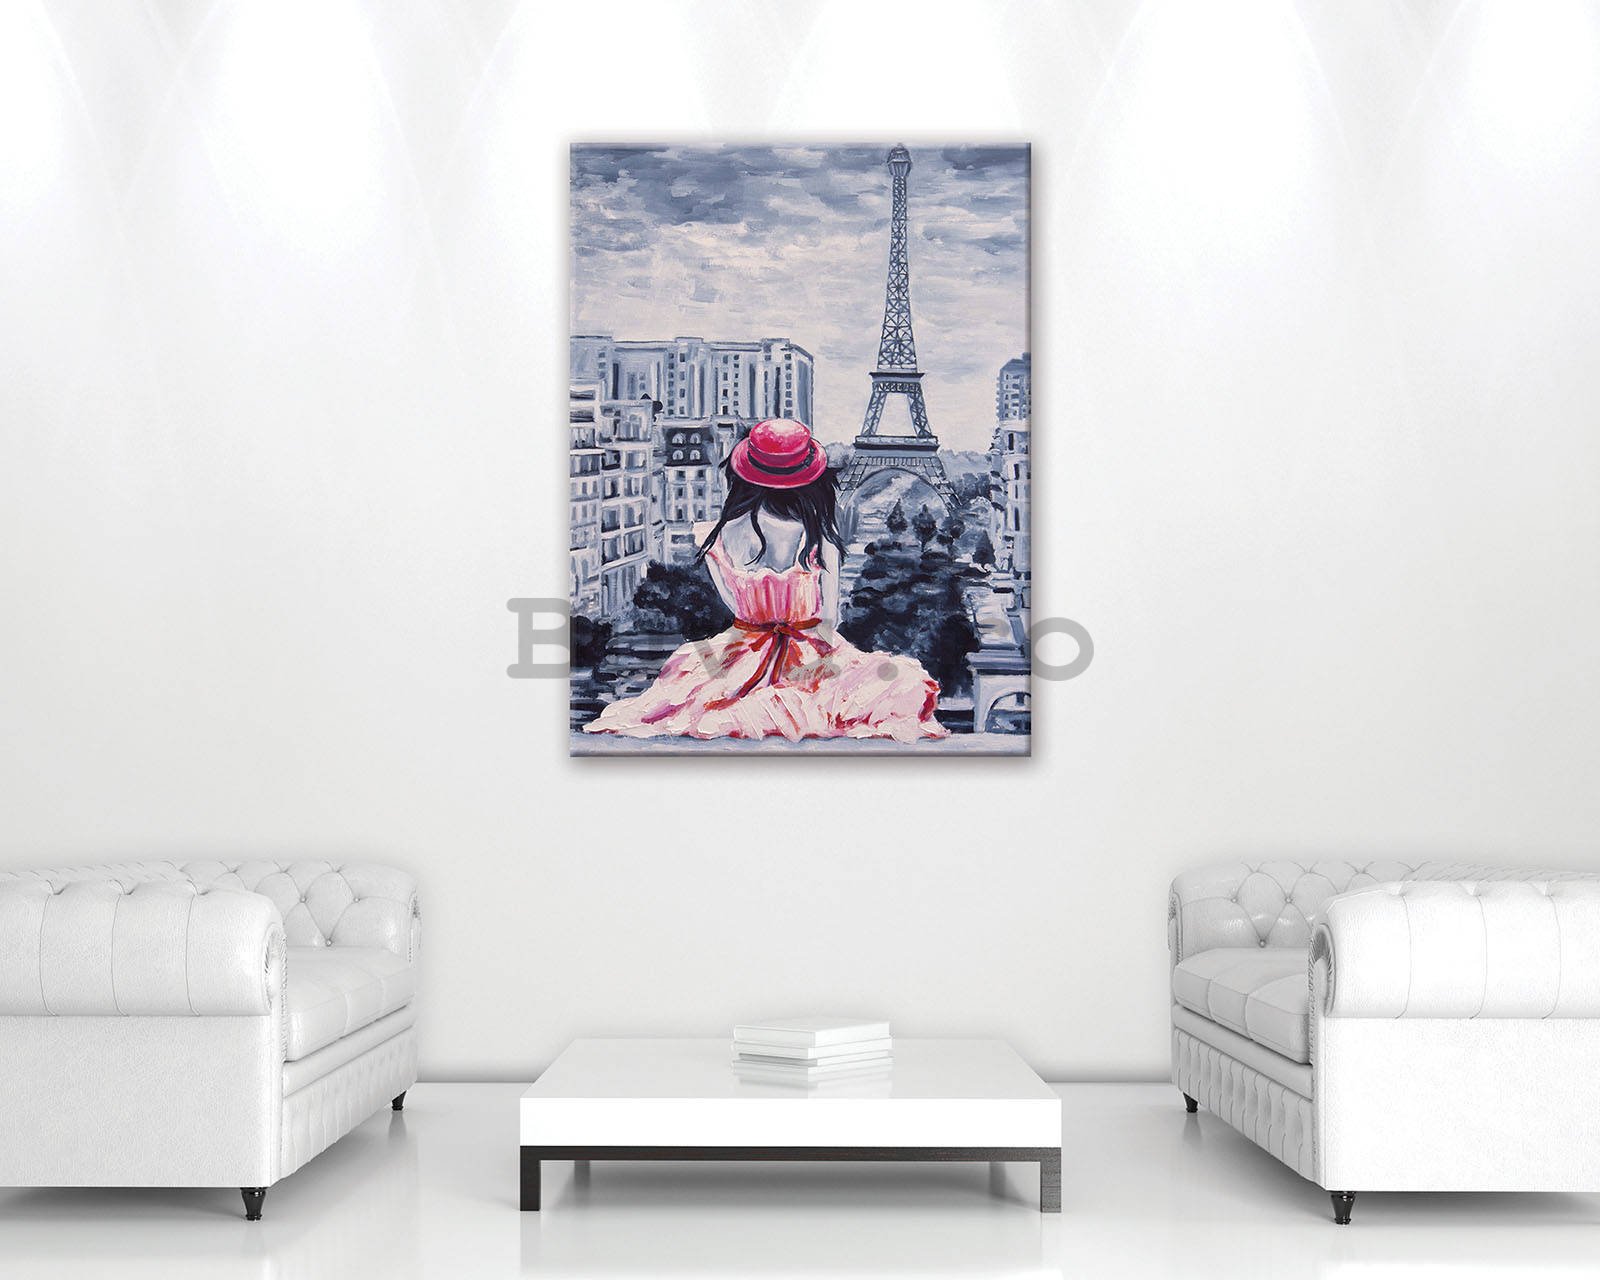 Tablou canvas: Fată la Paris - 60x80 cm